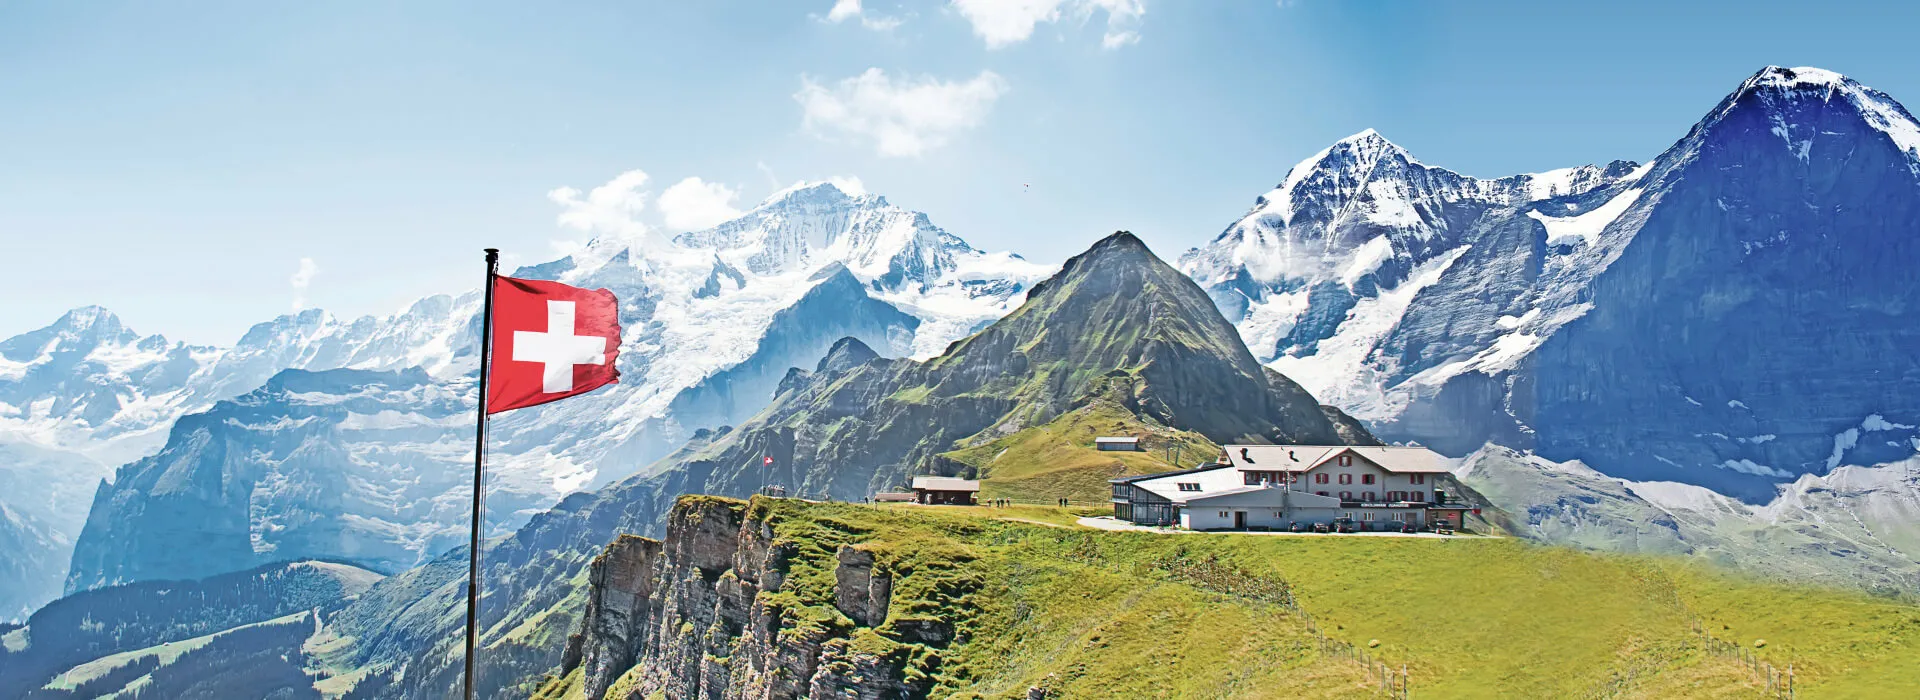 Hotels in der Schweiz background image